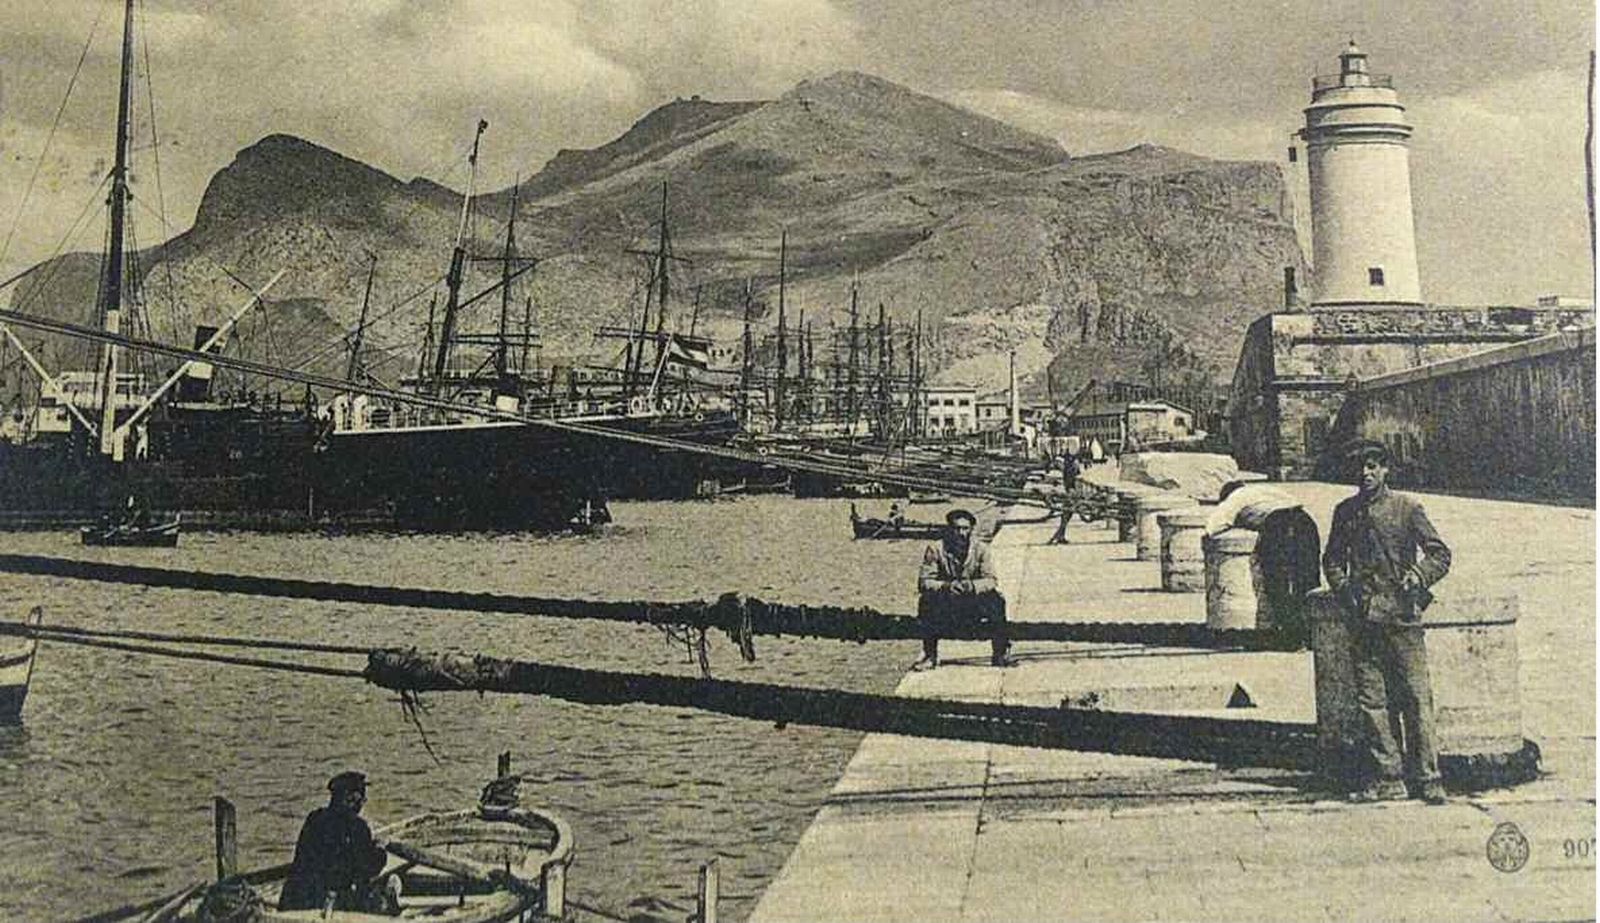 Porto di Palermo anni Venti. Barche a remi attendono di trasportare i passeggeri dalla banchina alla scaletta delle navi alla fonda (CSDU)